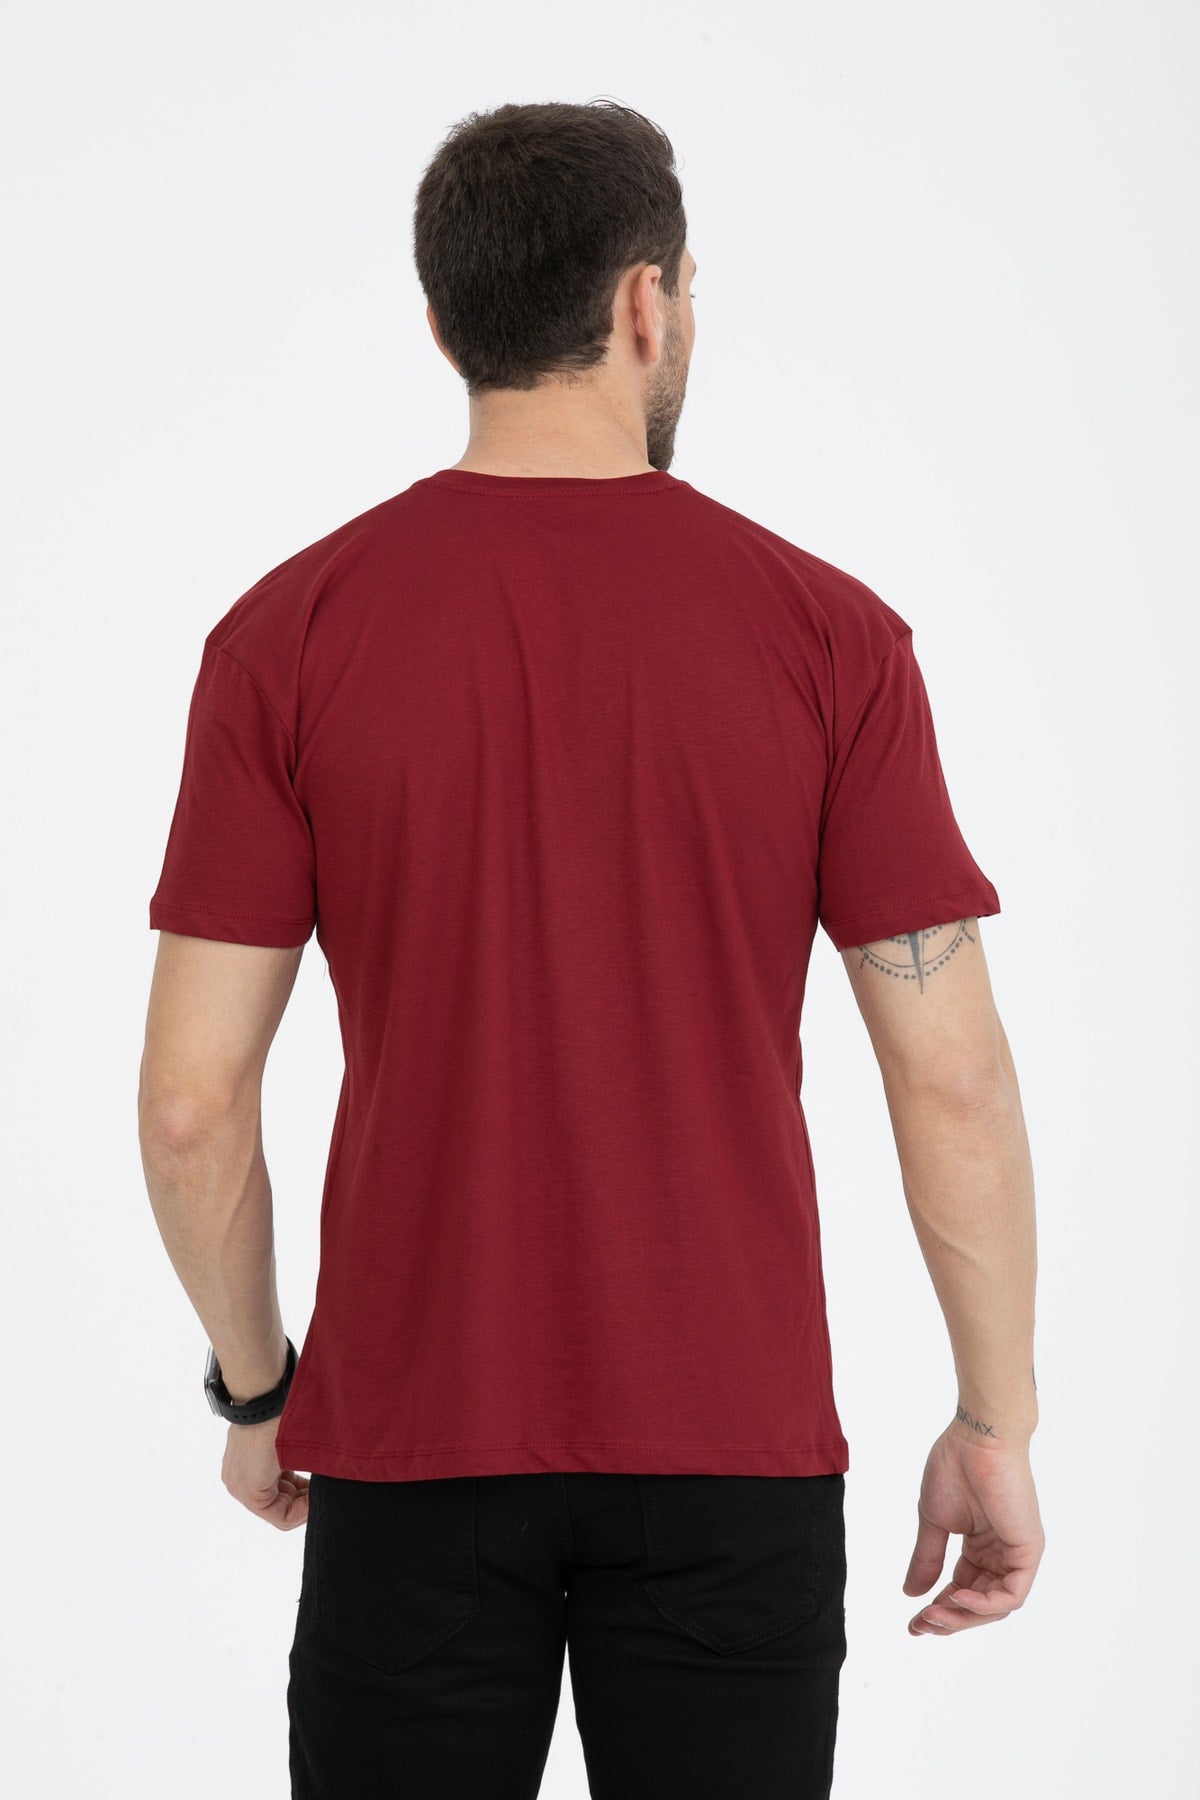 Men's Printed T-Shirt Regular Fit Claret Red